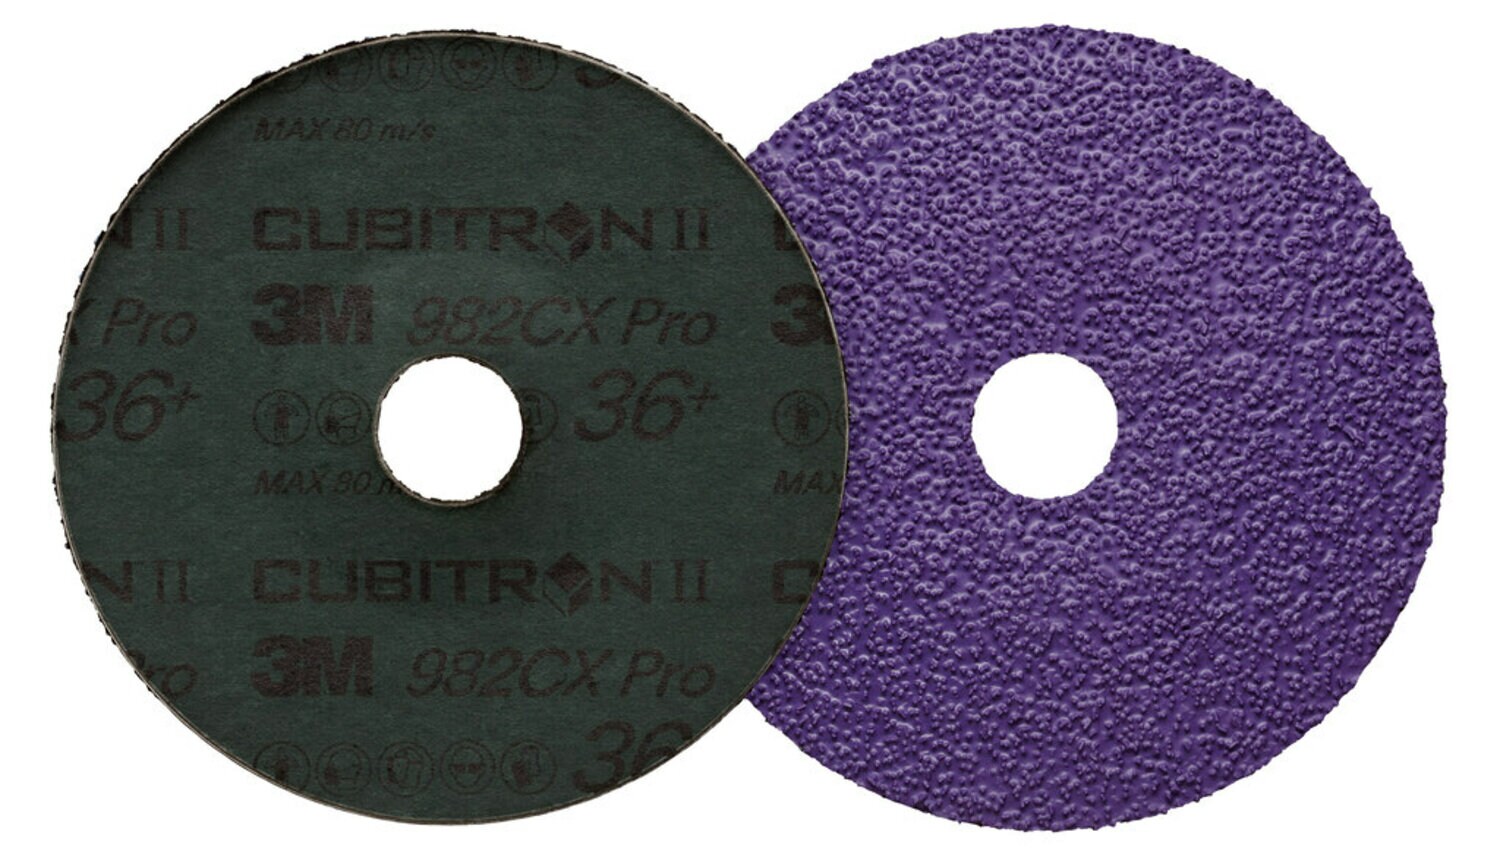 7100245023 - 3M Cubitron II Fibre Disc 982CX Pro, 36+, 4-1/2 in x 7/8 in, Die 450E,
25/Bag, 100 ea/Case